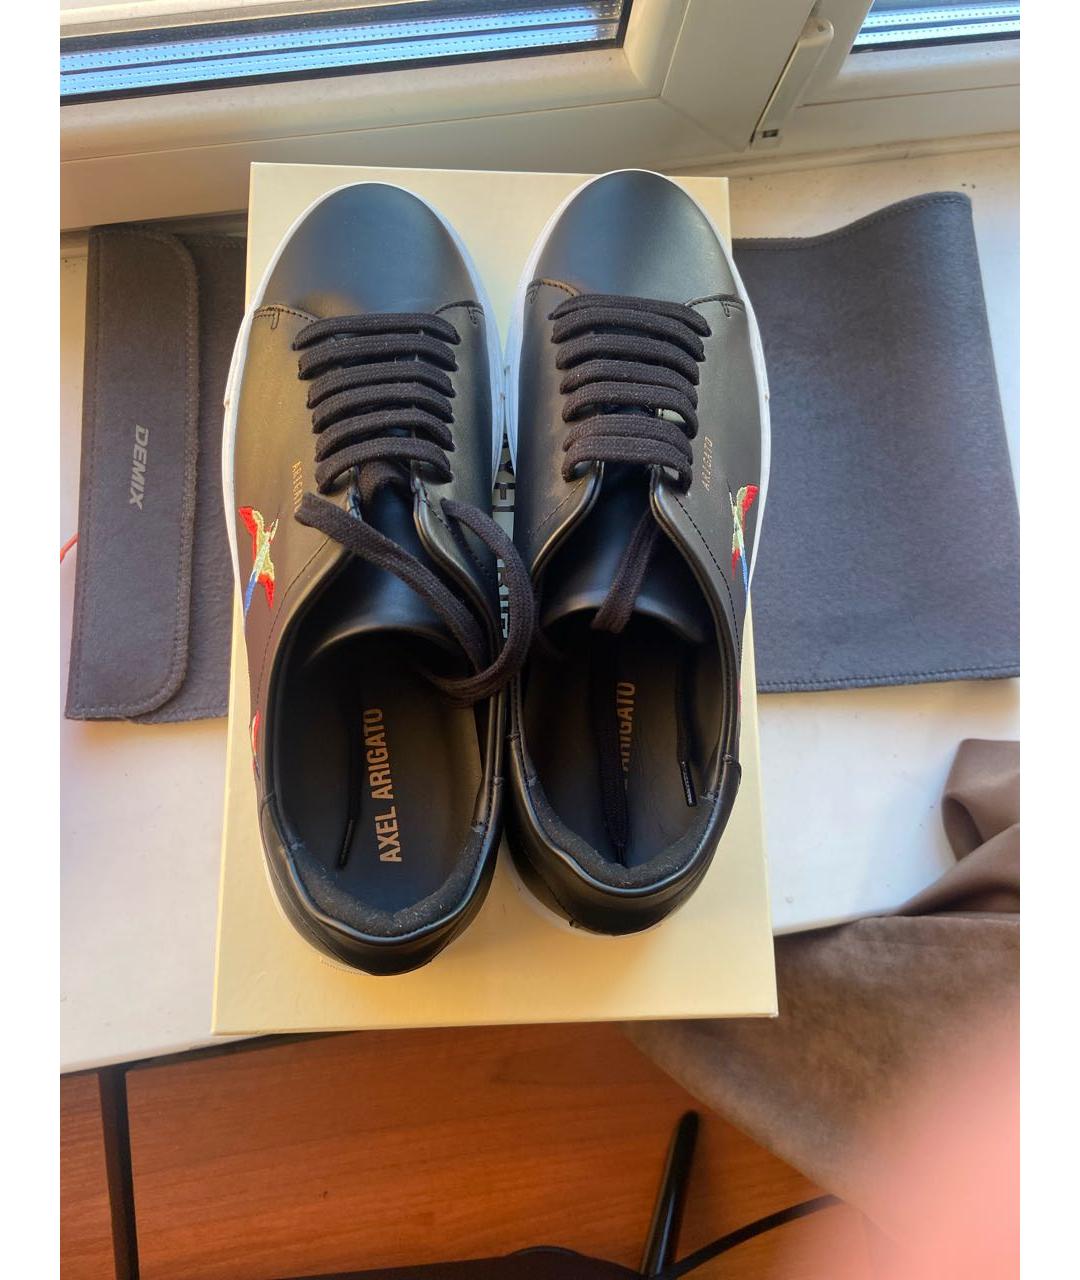 AXEL ARIGATO Черные кожаные низкие кроссовки / кеды, фото 3